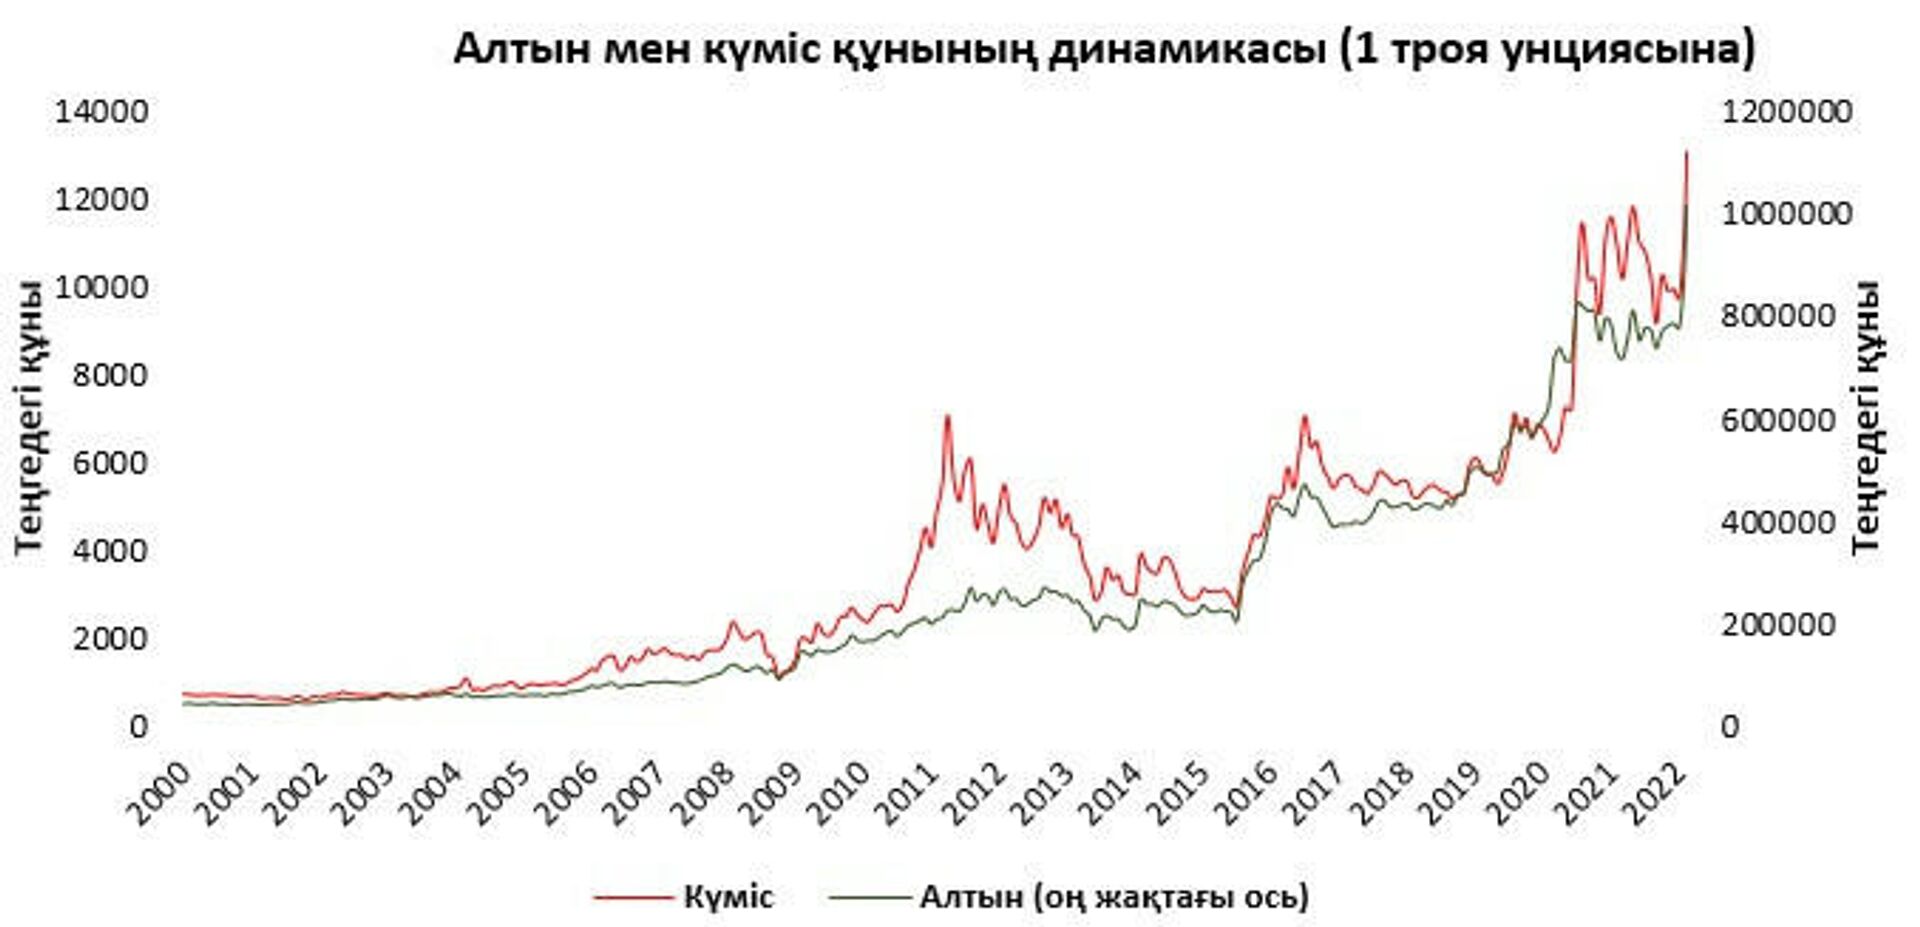 Инвестициялаудың баламалы құралдары  - Sputnik Қазақстан, 1920, 25.03.2022